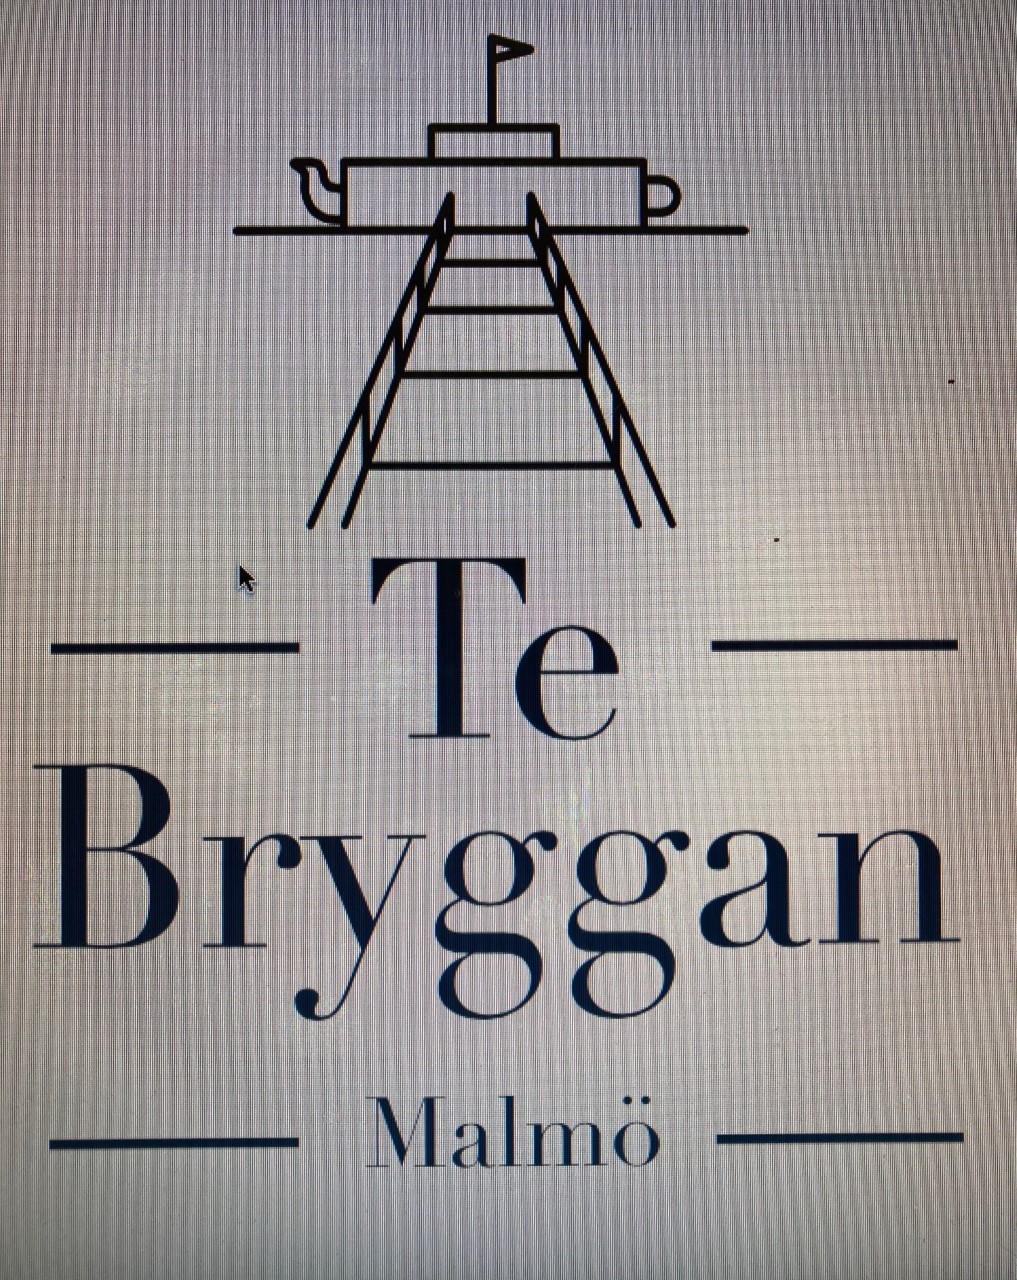 Te Bryggan Malmö 